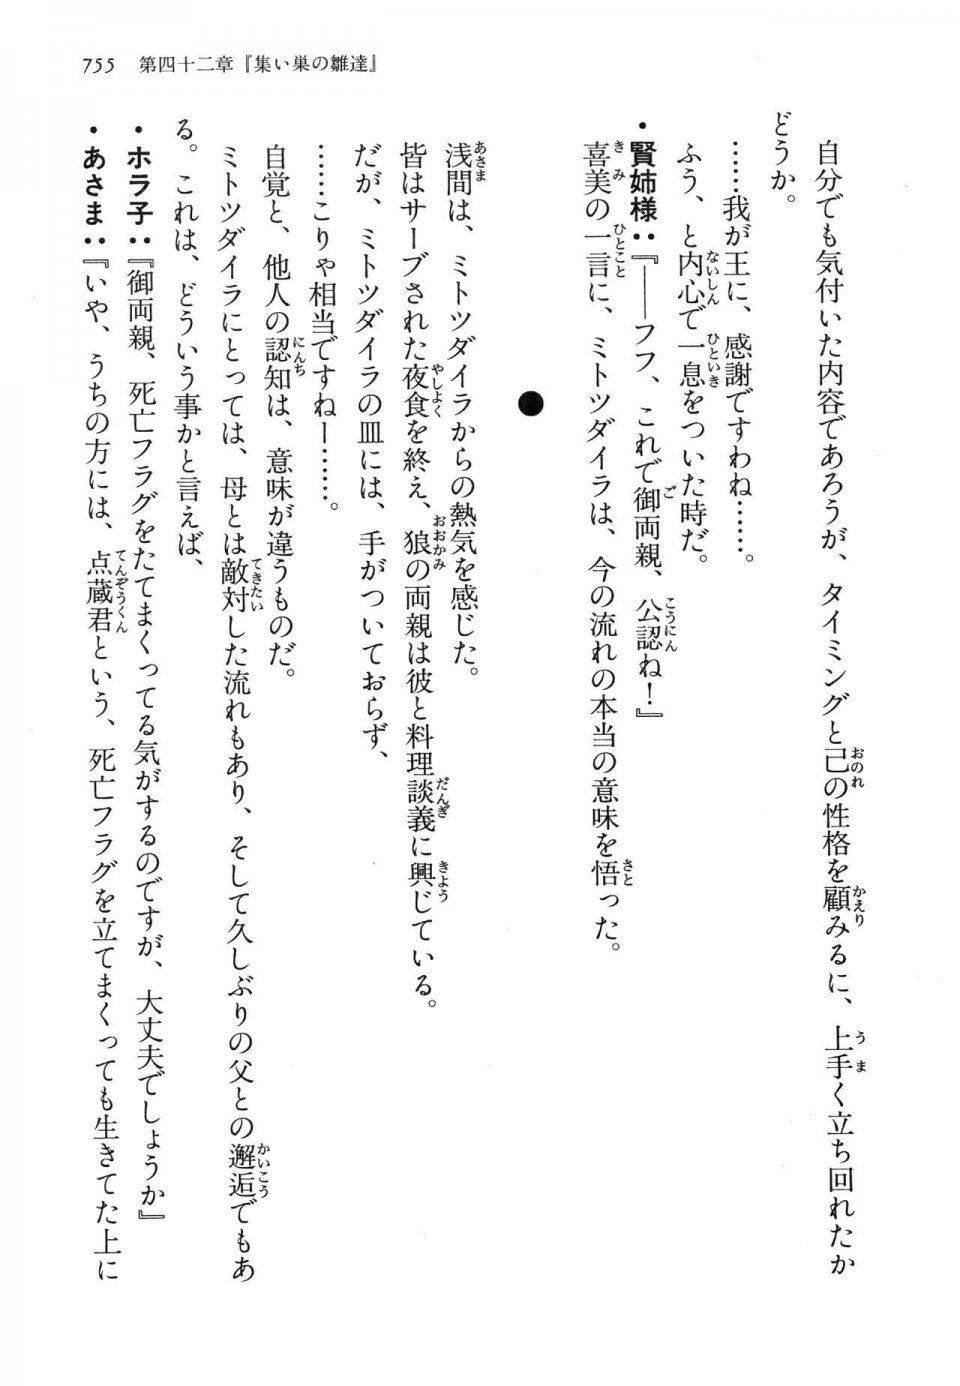 Kyoukai Senjou no Horizon LN Vol 14(6B) - Photo #755